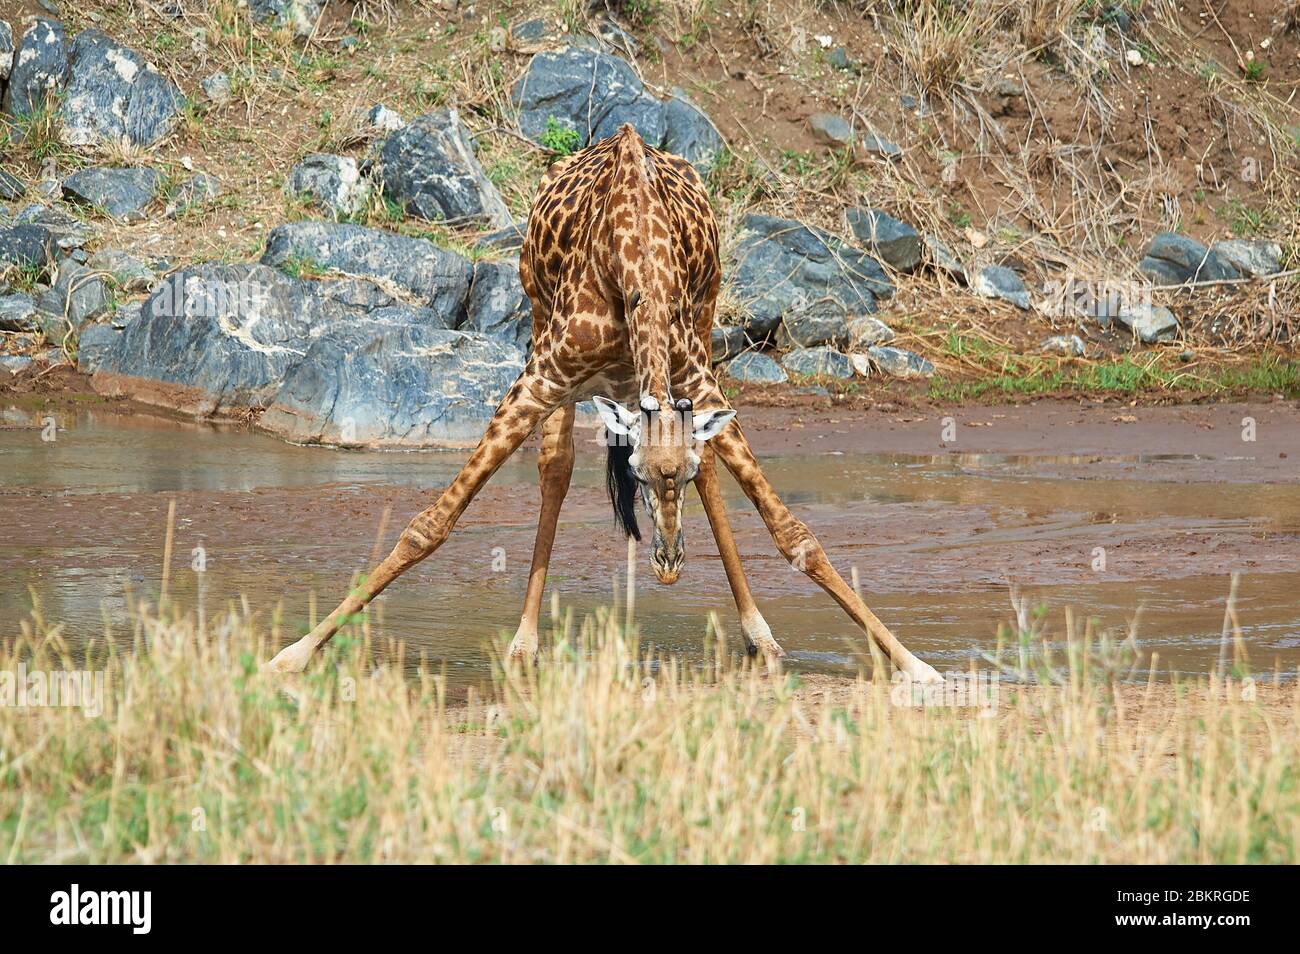 Eine juvenile Giraffe, die ihre Vorderbeine umspannt, um zu trinken. Eine harte Übung, um Wasser zu bekommen Stockfoto